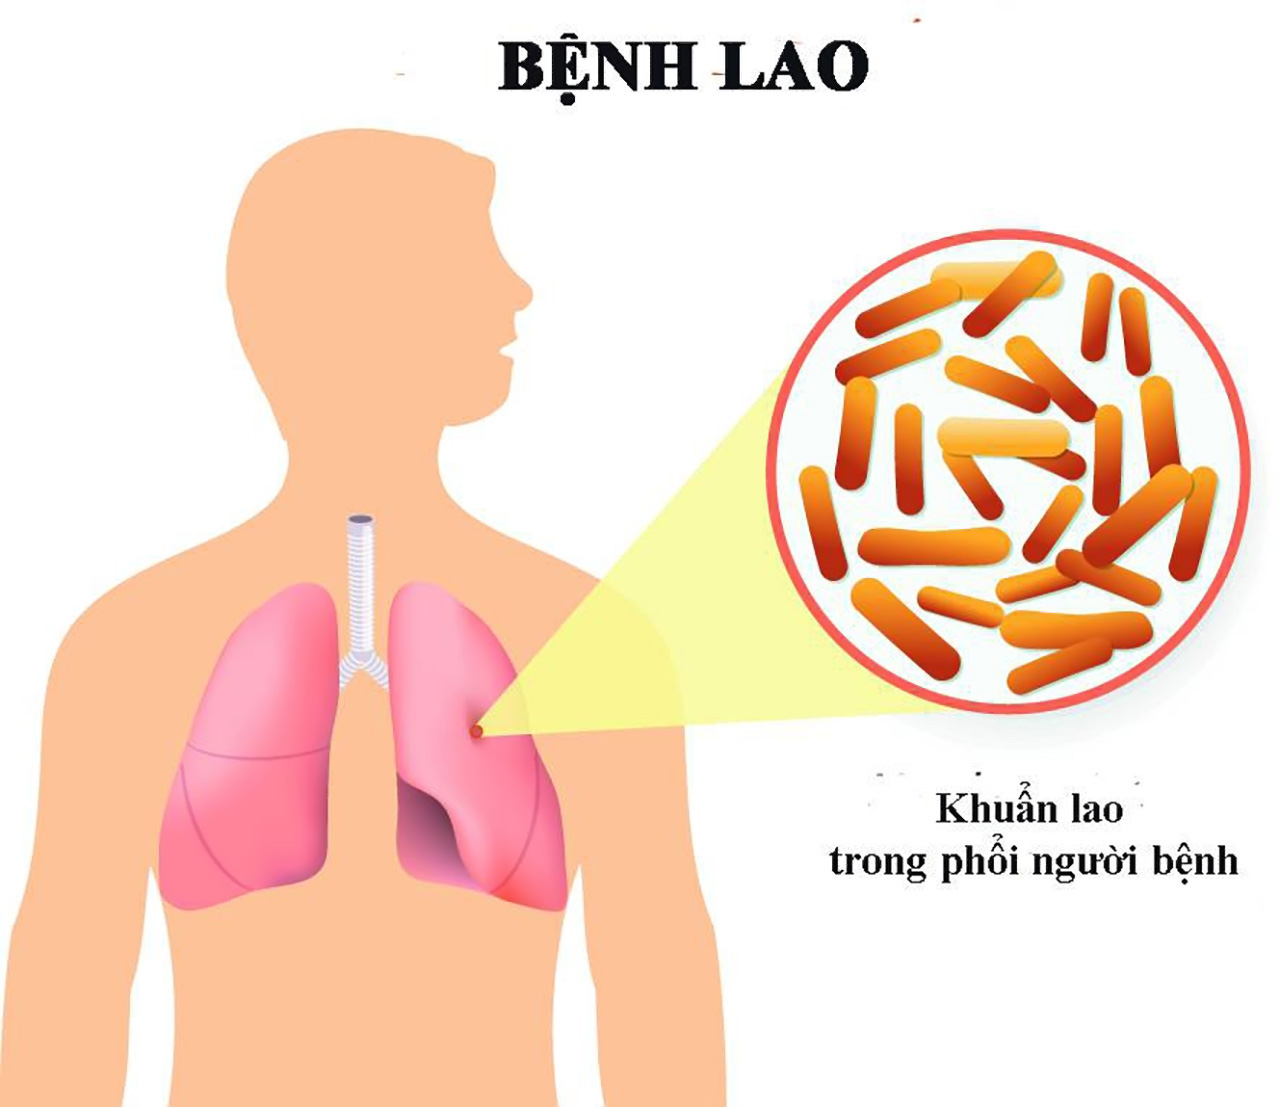 Tràn dịch màng phổi do lao là tình trạng thường gặp nhất